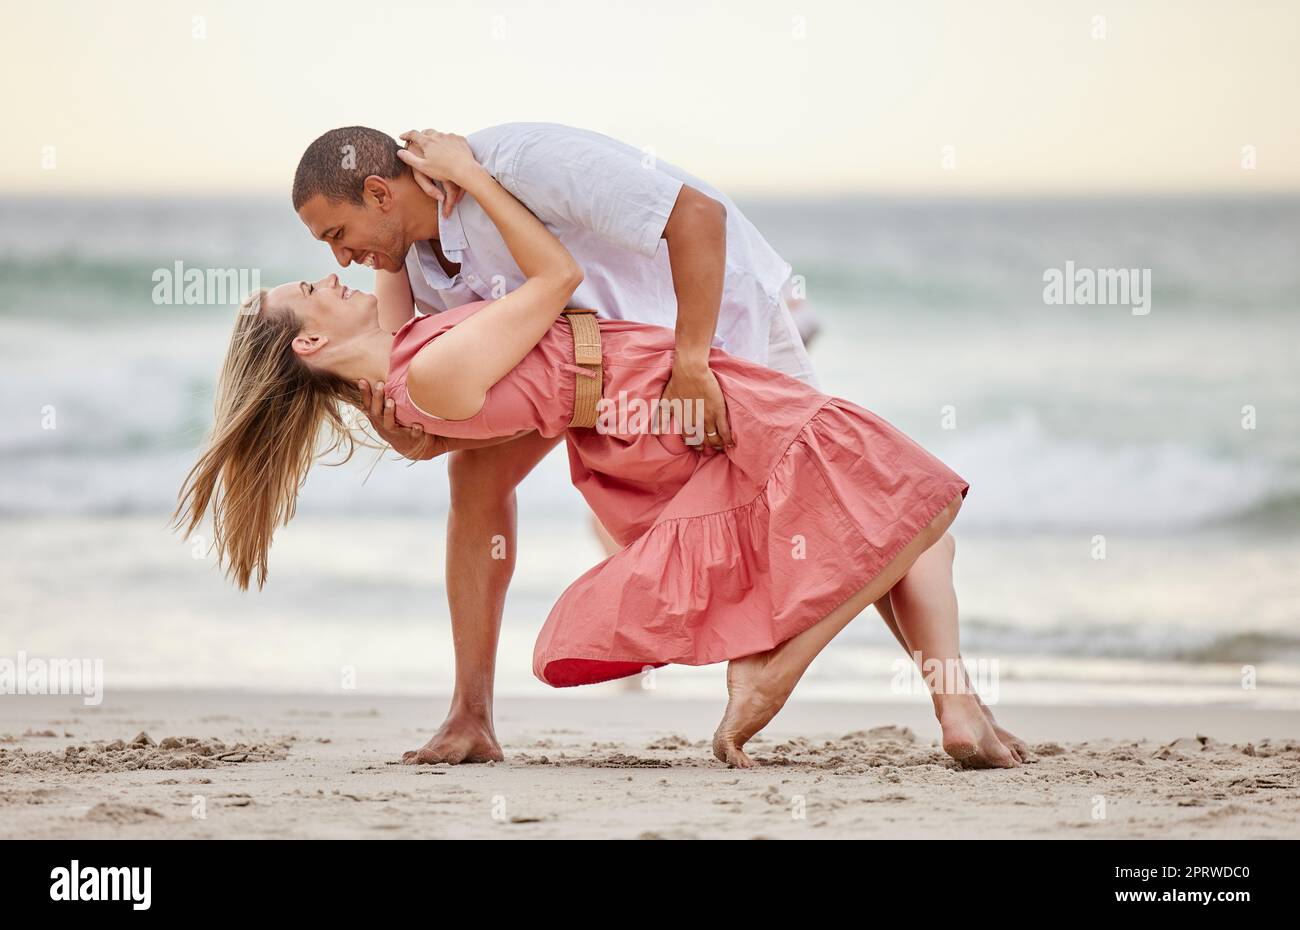 L'amour, la danse et la danse de couple à la plage en été célèbrent leur mariage, bonheur et vacances de lune de miel. Sourire, coucher de soleil et femme heureuse célébrant une relation saine avec un partenaire en mer Banque D'Images